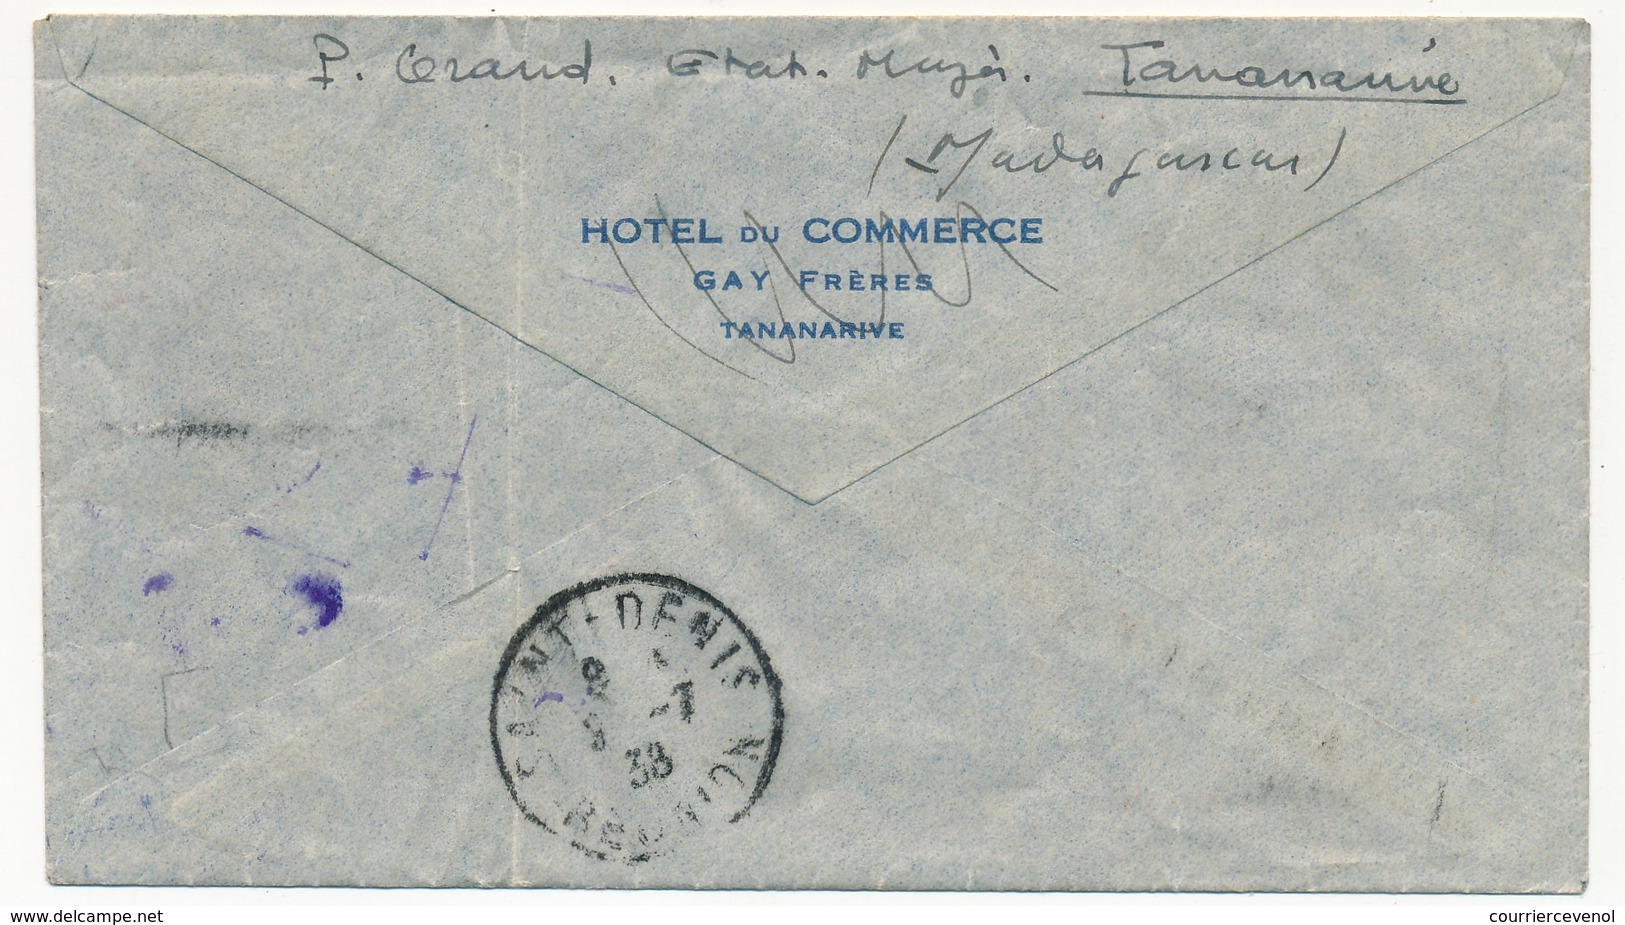 MADAGASCAR - Env. Rec Cachet Tananarive 1938 + Poste Aérienne Voyage D'Etude Madagascar Réunion 8/7/1938 - Brieven En Documenten